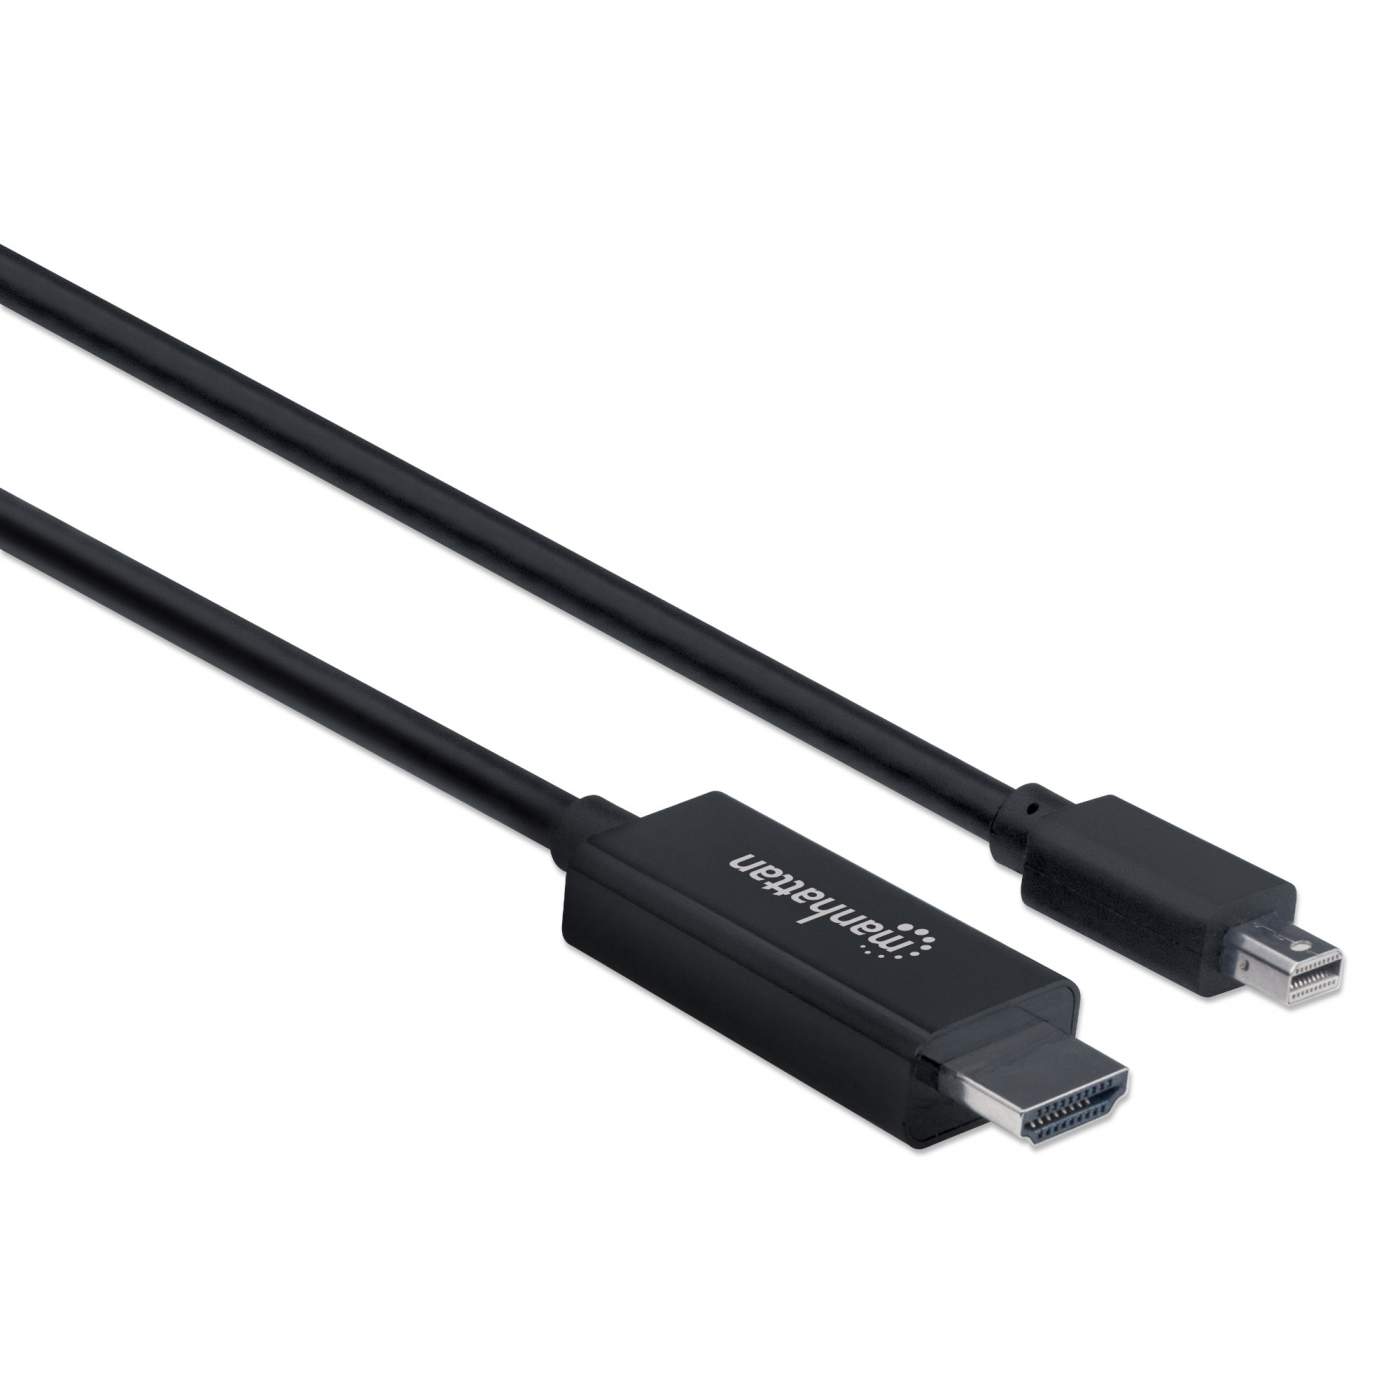 HMDI Cables - 1080P, 4k, Mini HDMI and More 